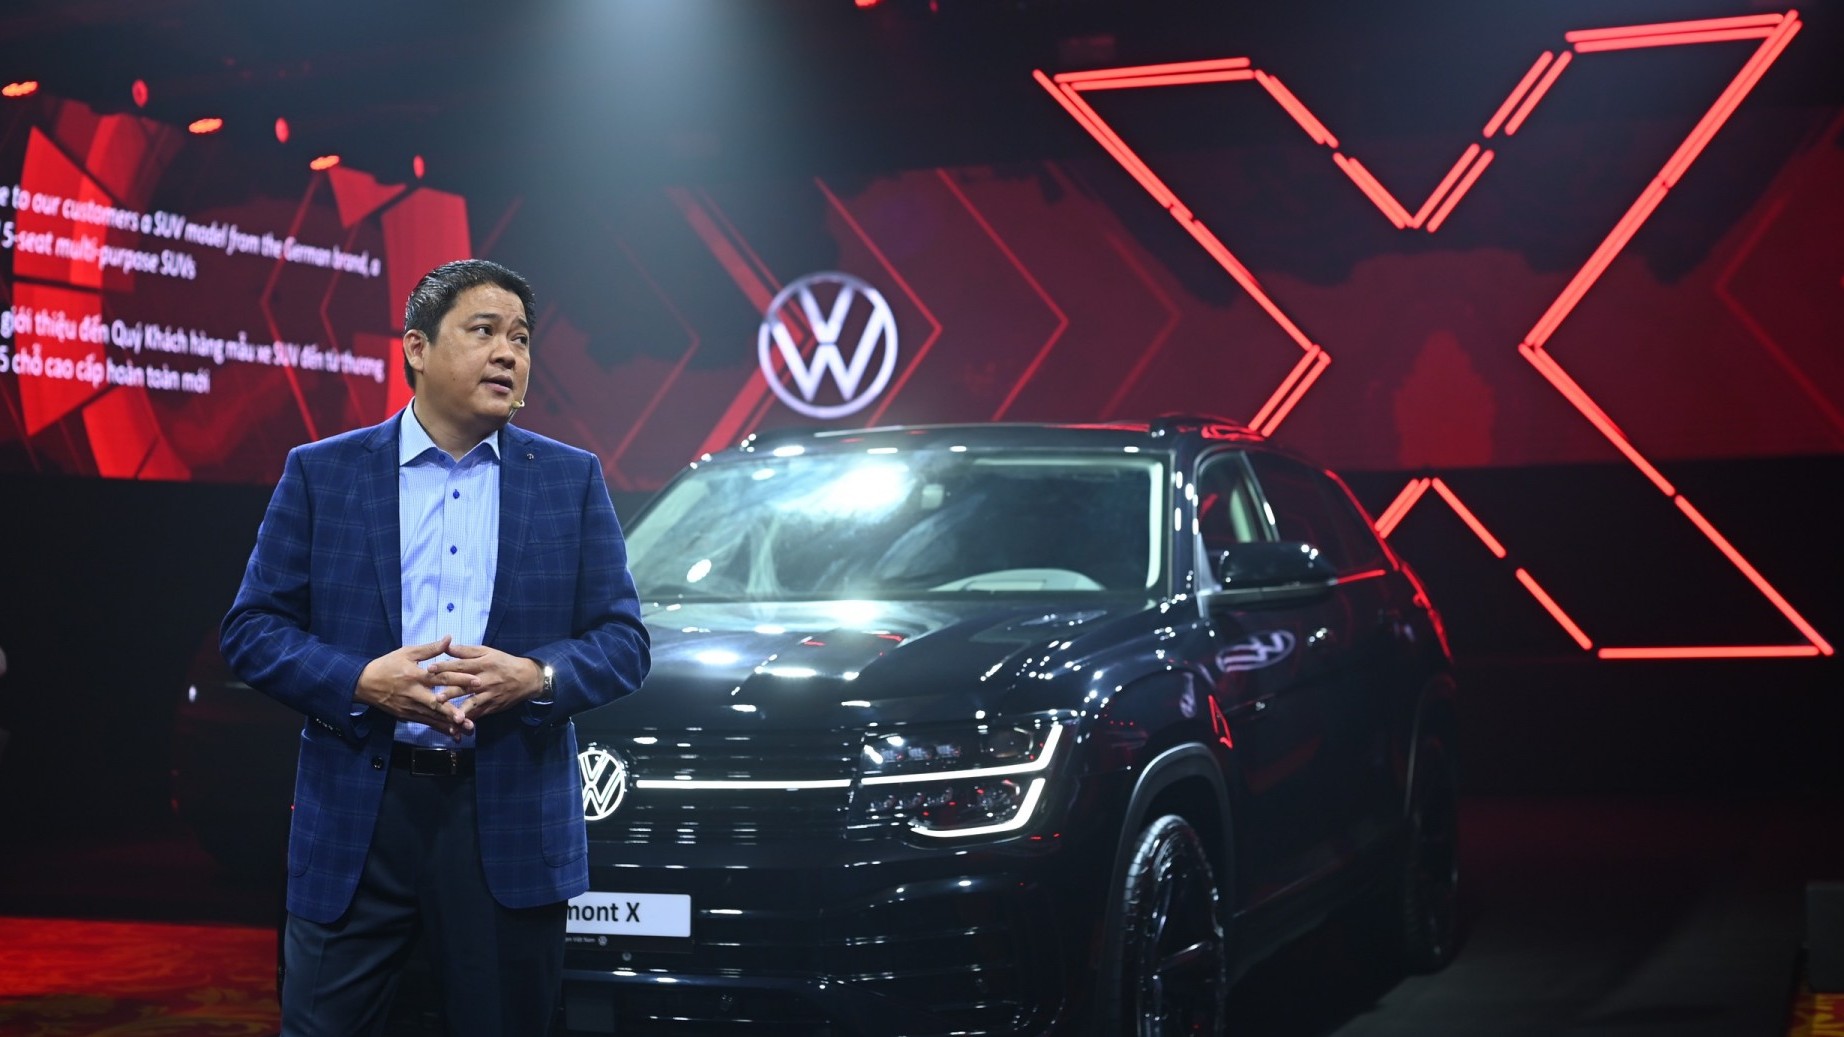 Tổng giám đốc Volkswagen Việt Nam mong bán 1.000 xe Volkswagen Teramont X năm 2024